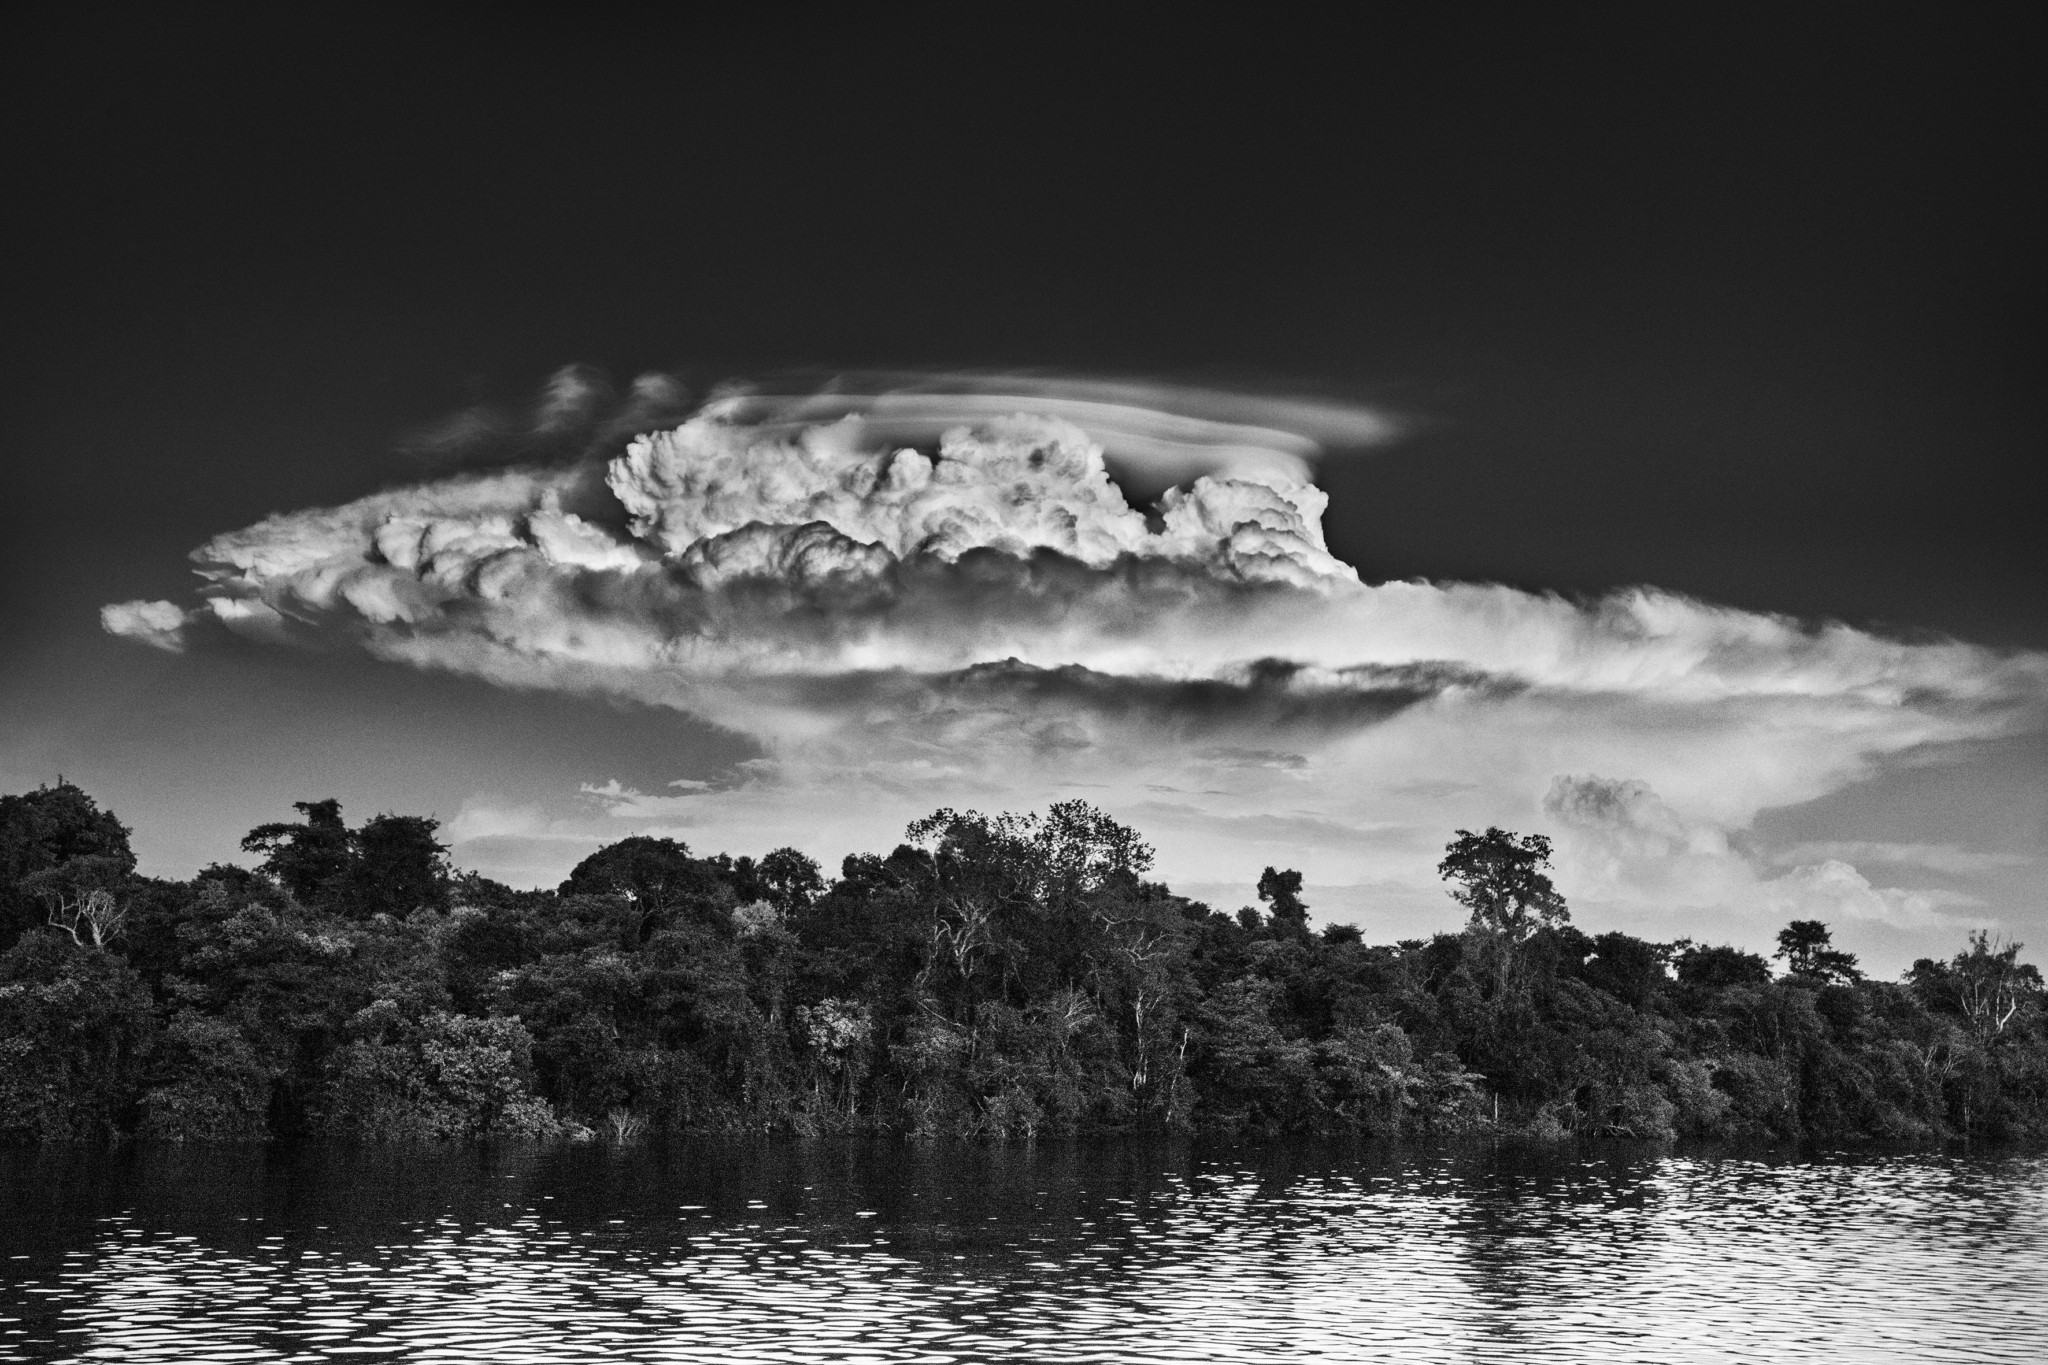 Το μοναδικό ντοκουμέντο στο δάσος του Αμαζονίου από τον παγκόσμιο γκουρού της φωτογραφίας